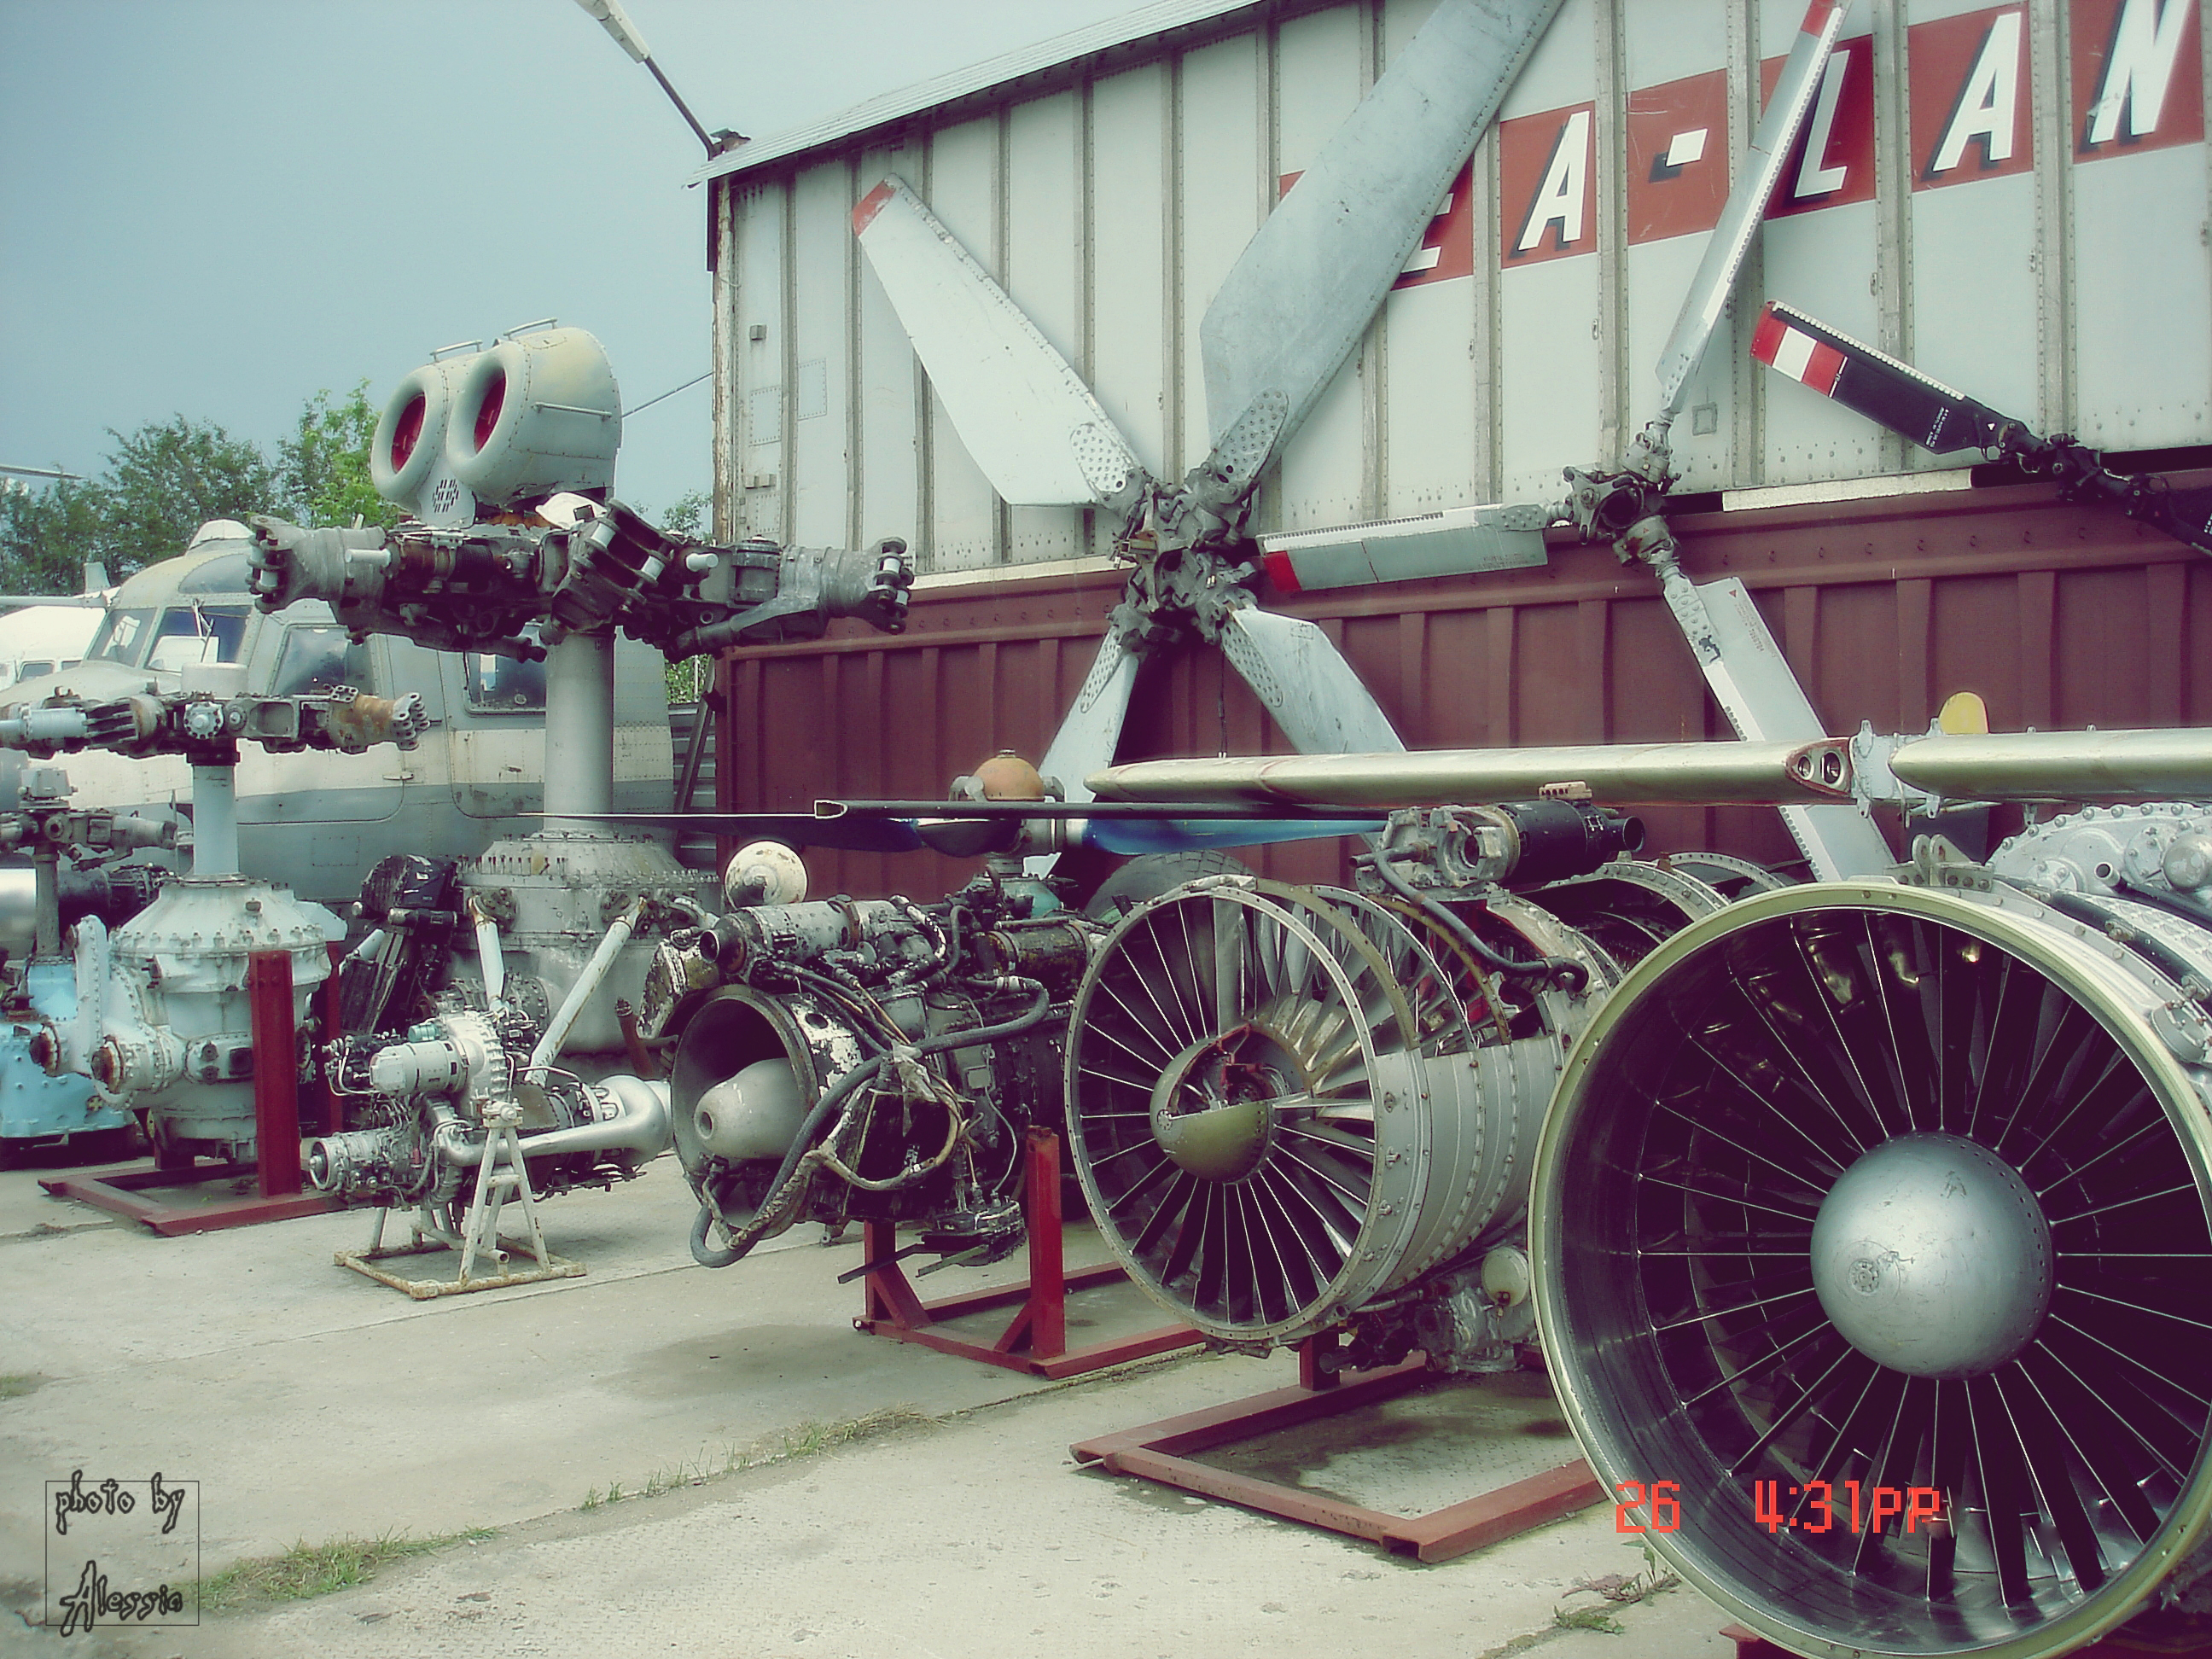 пермский музей авиации